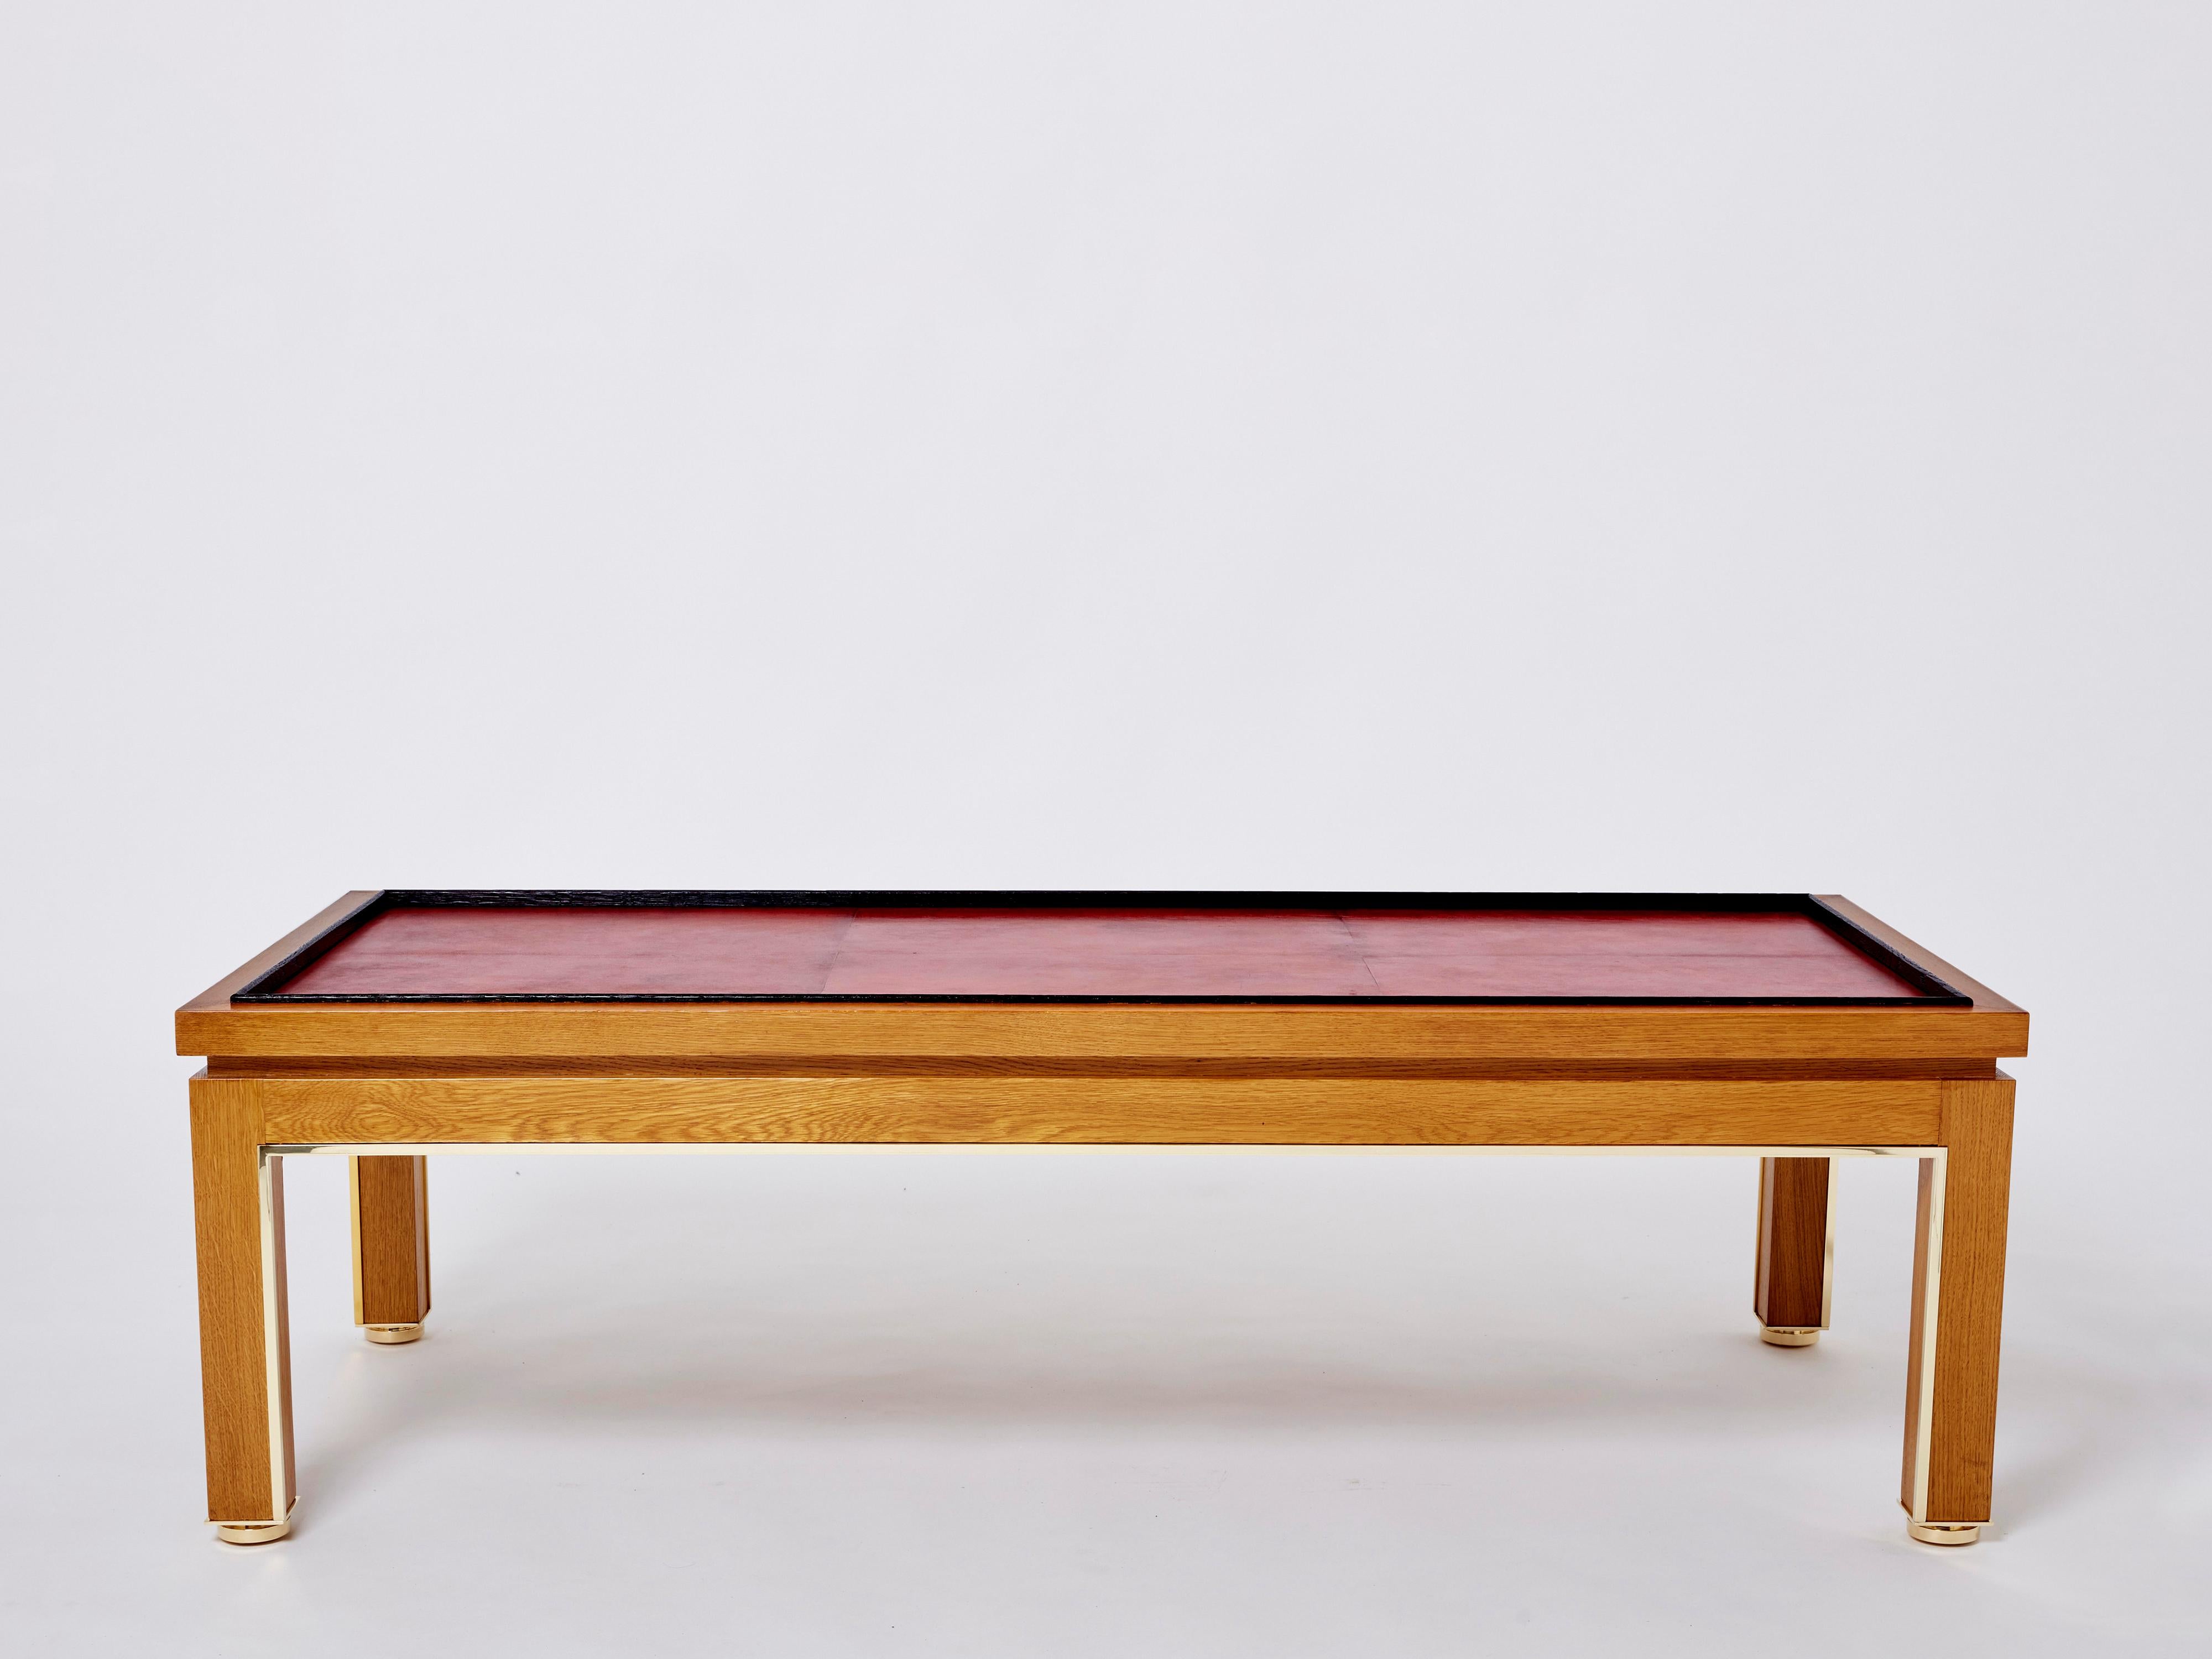 Table basse unique commandée par Alberto Pinto dans les années 1990 pour les décors d'un hôtel particulier de Paris 16ème, inspirée d'un dessin de table basse de Paul Dupré-Lafon. Cette pièce est un exemple exquis de meubles raffinés, très détaillés